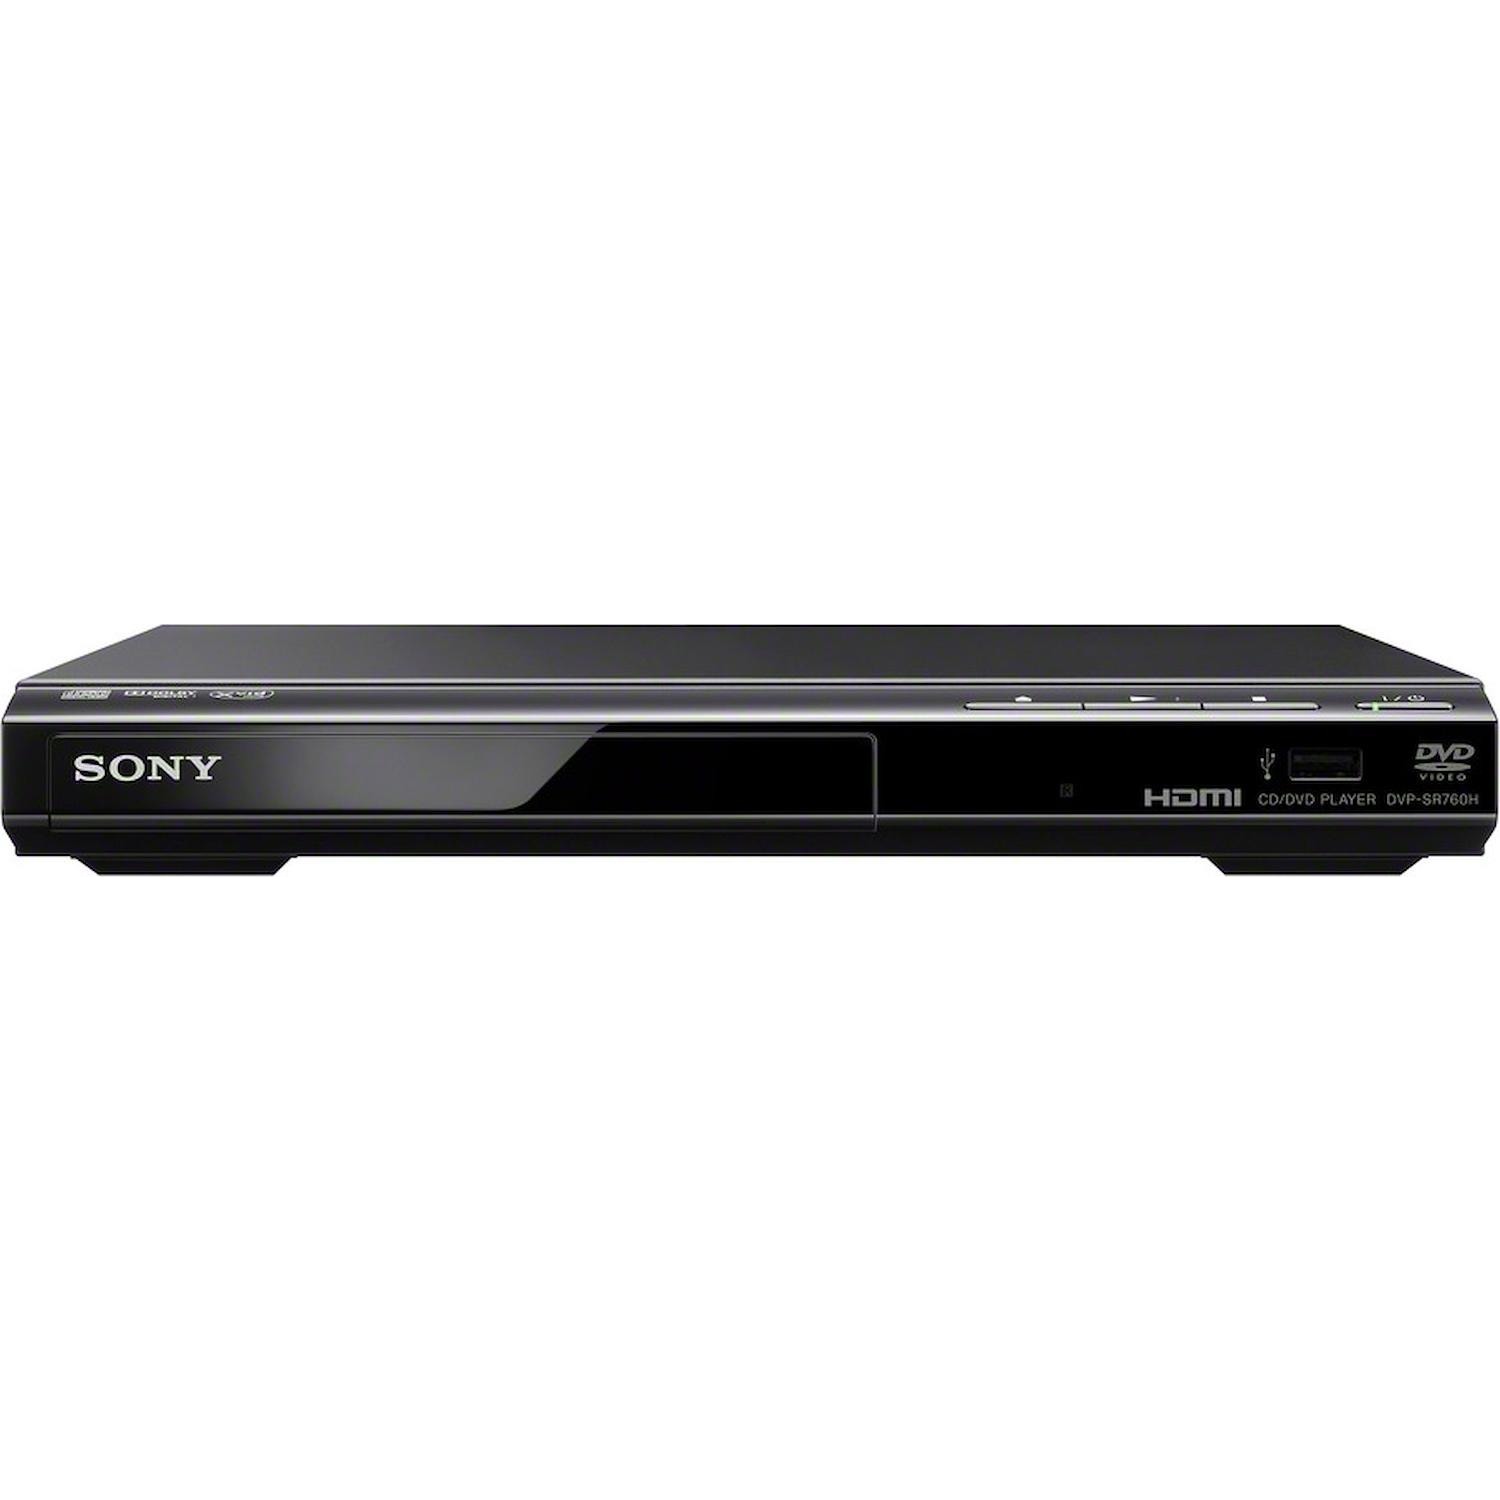 Immagine per Lettore DVD DIVX HDMI Sony SR760HB da DIMOStore